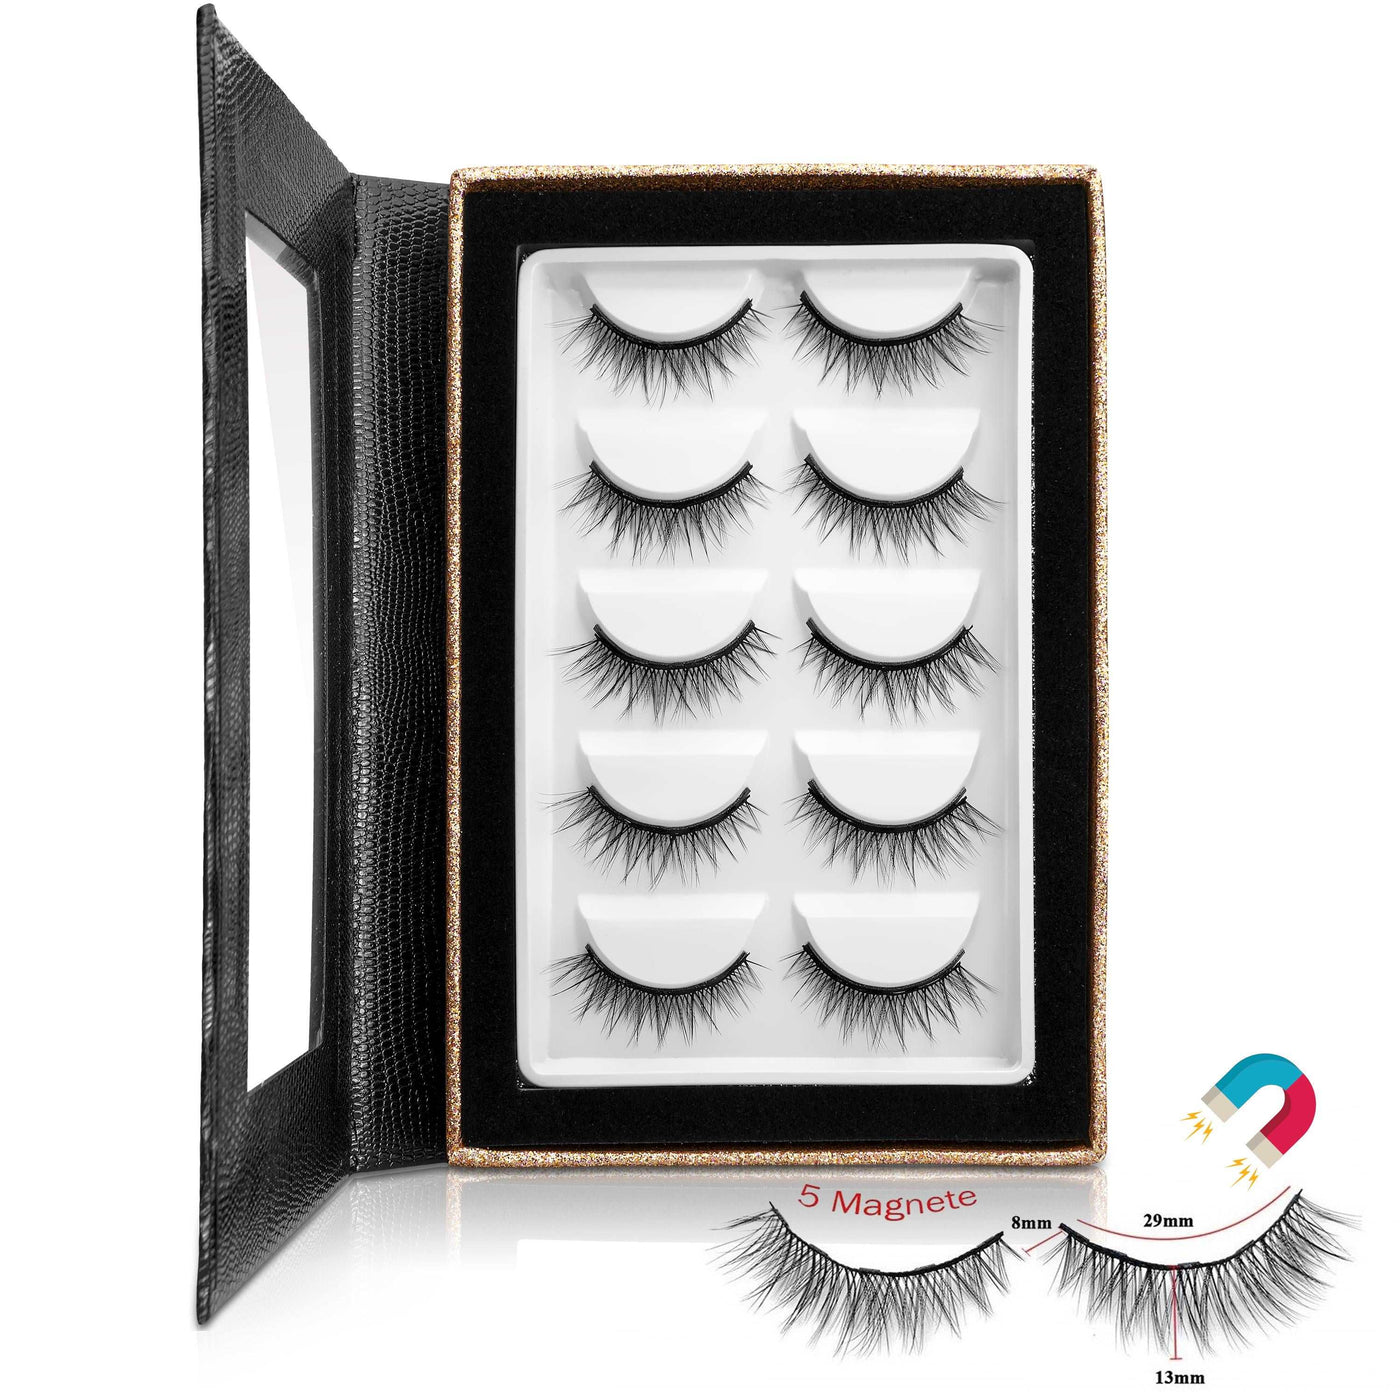 Die Vorratsbox enthält 5 Paar Magnet Wimpern im ELEGANT Look. Die Wimpern bieten einen leichten Tragekomfort, sind wasserfest und mehrfach wiederverwendbar.